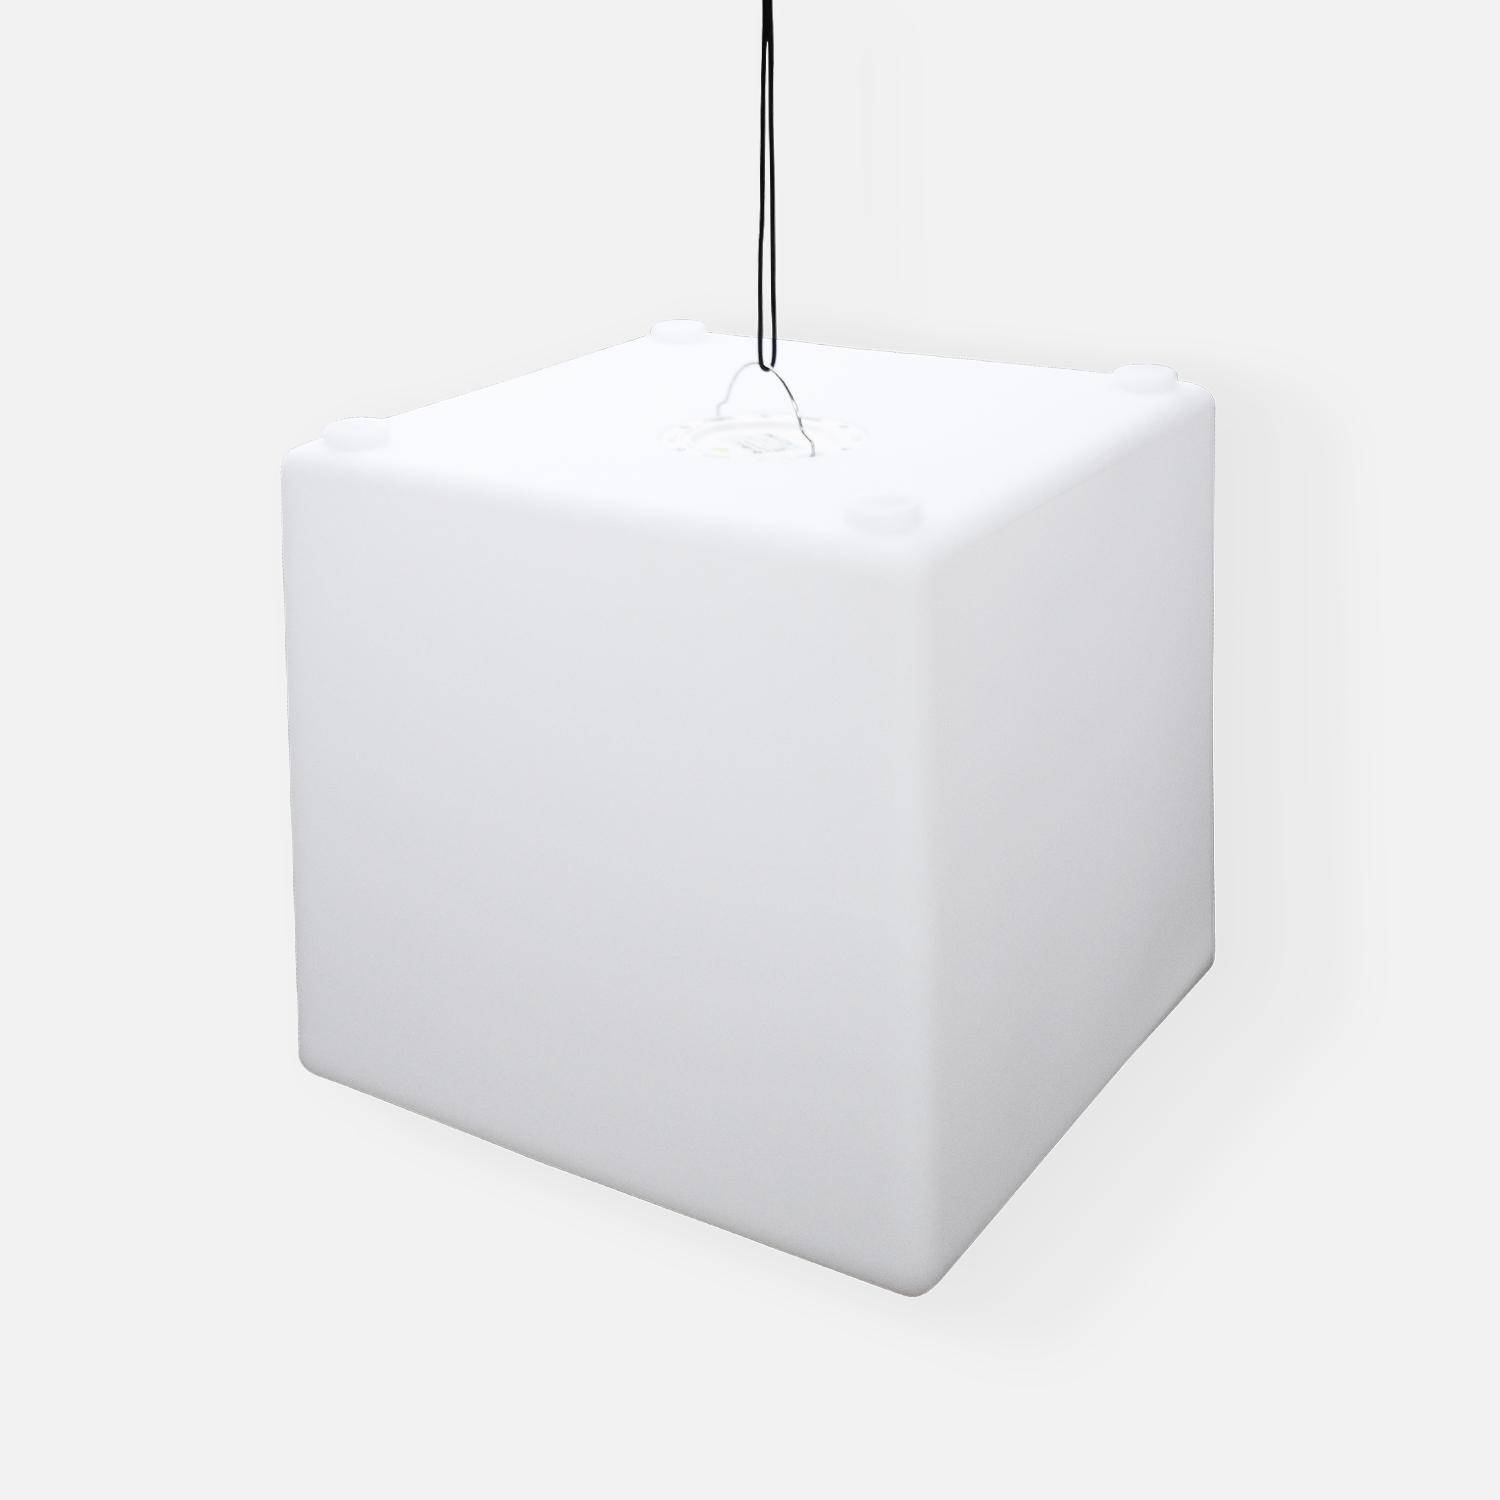 Cube LED 40cm – Cube décoratif lumineux, 40x40cm, blanc chaud, commande à distance Photo5